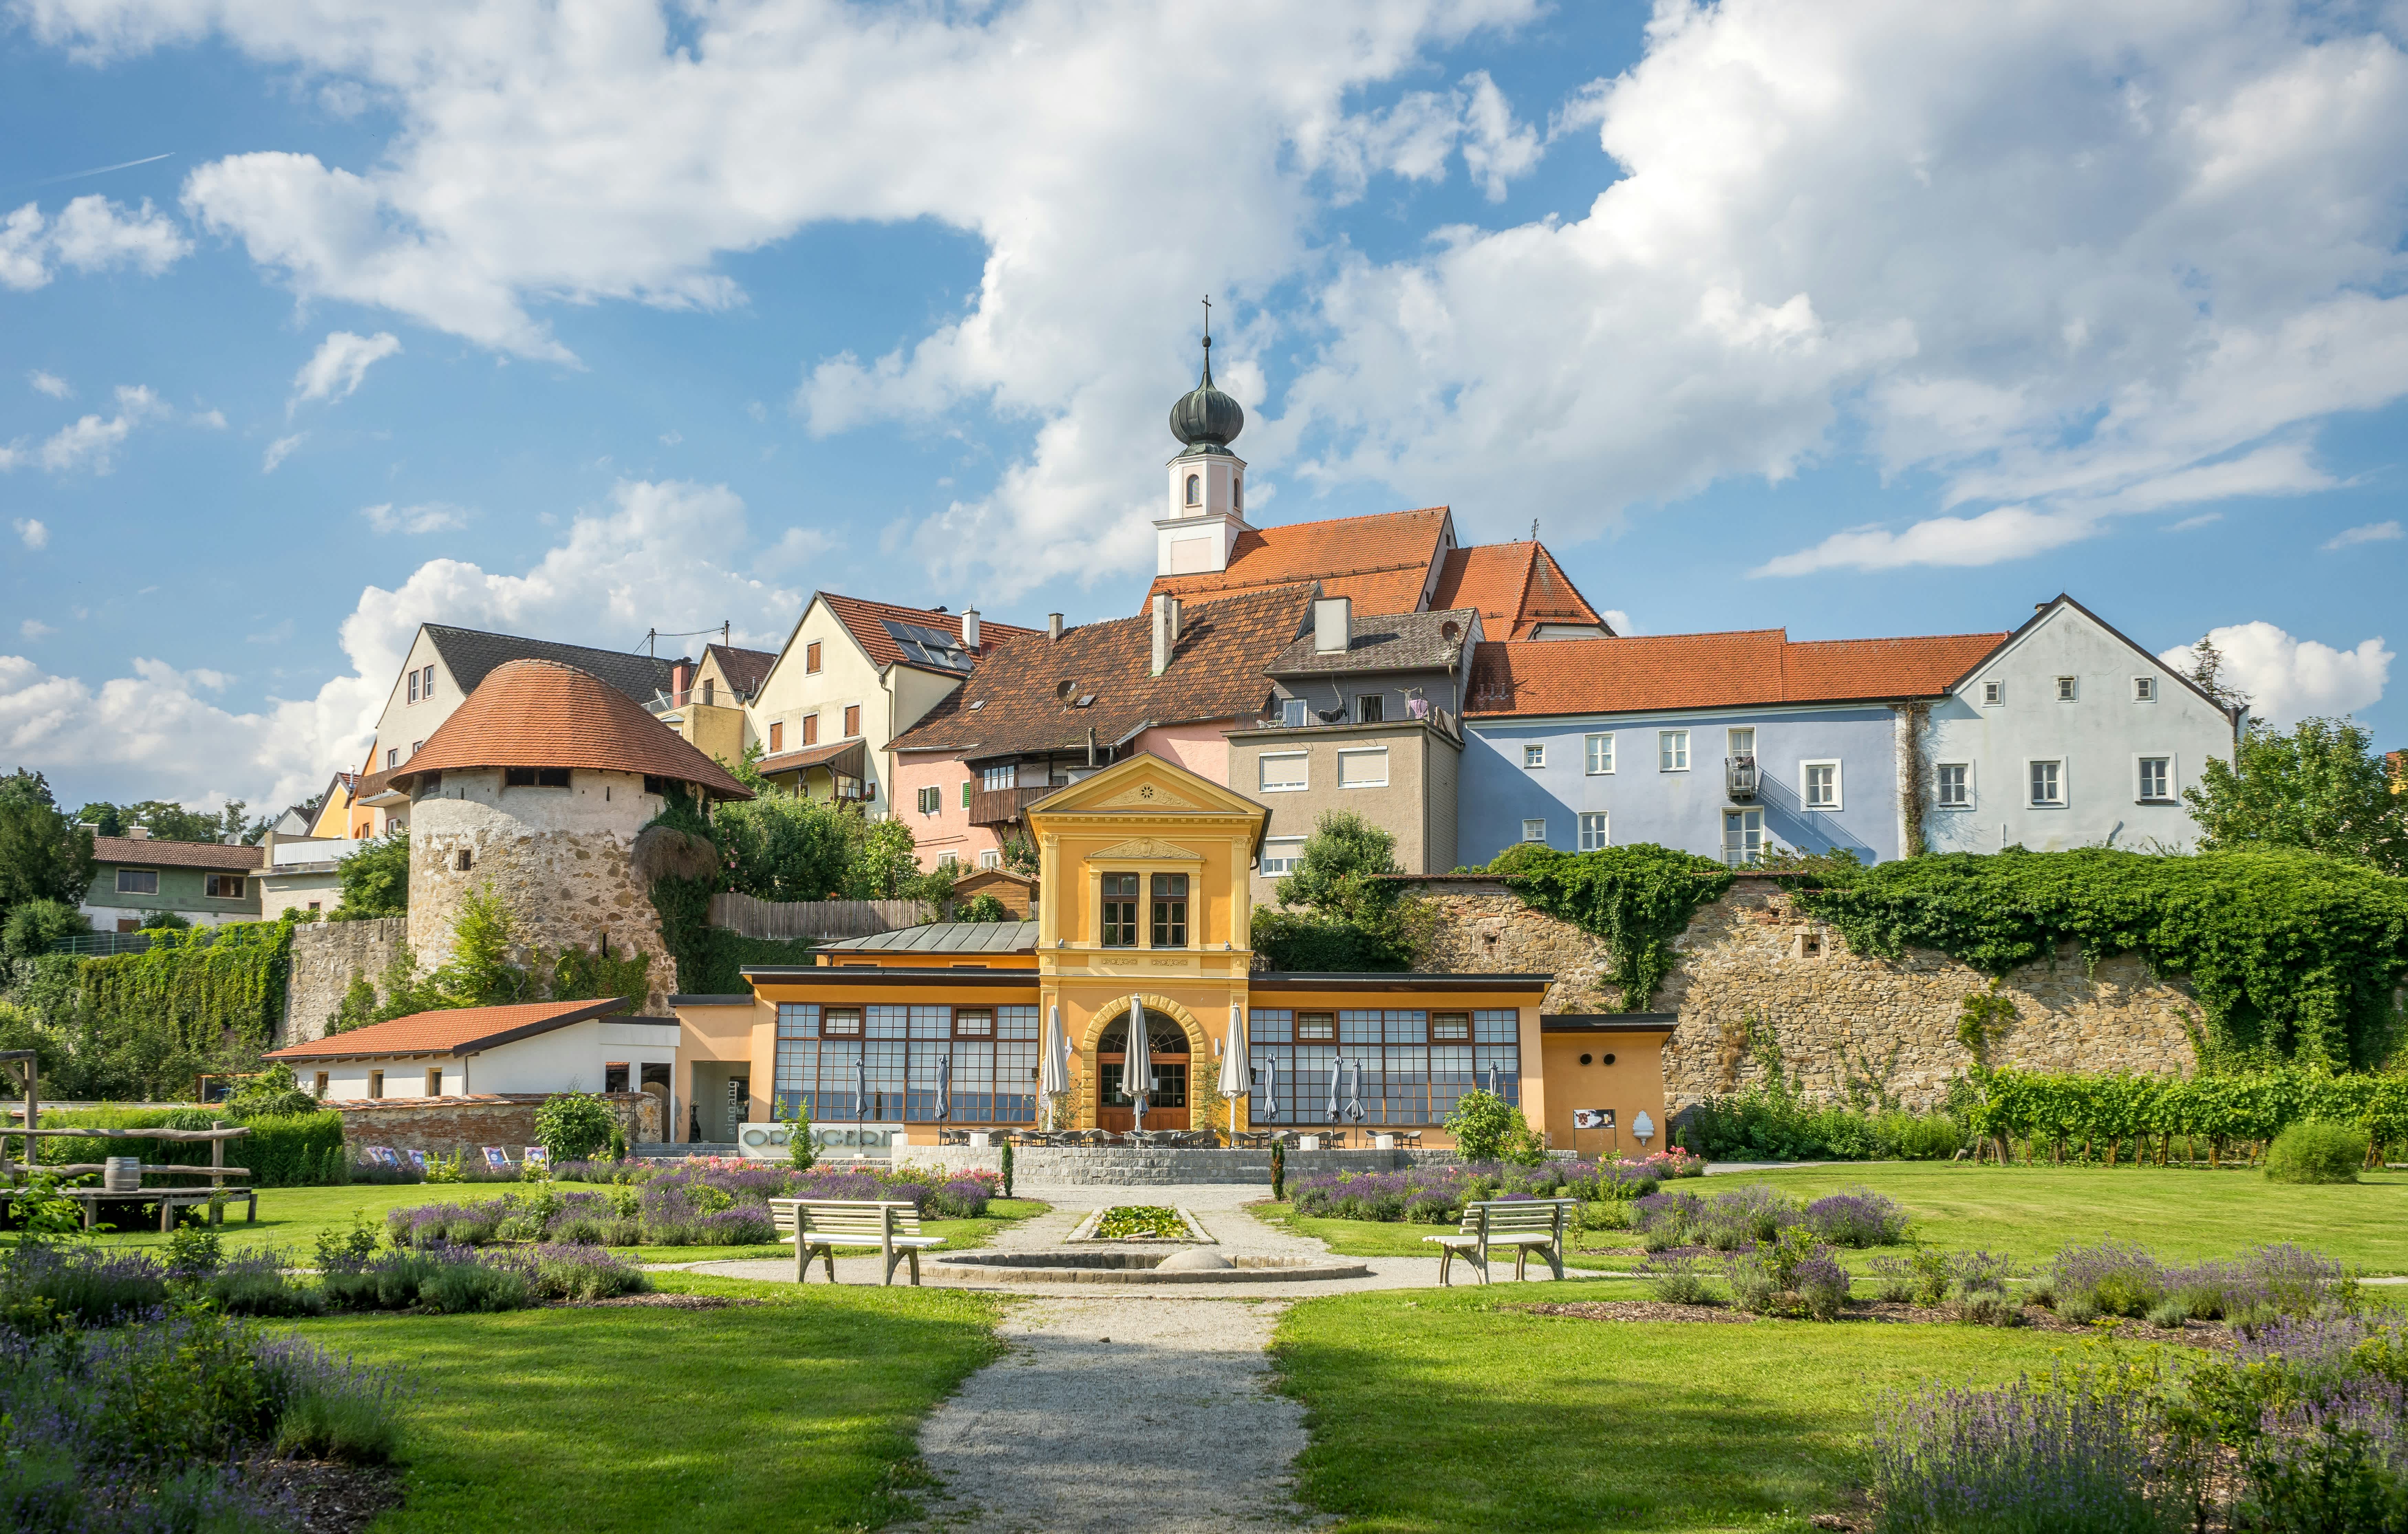 Erleben Sie die hohe Lebensqualität und regionale Vielfalt von Sattledt in Oberösterreich. Entdecken Sie die Schönheit dieser Gemeinde!